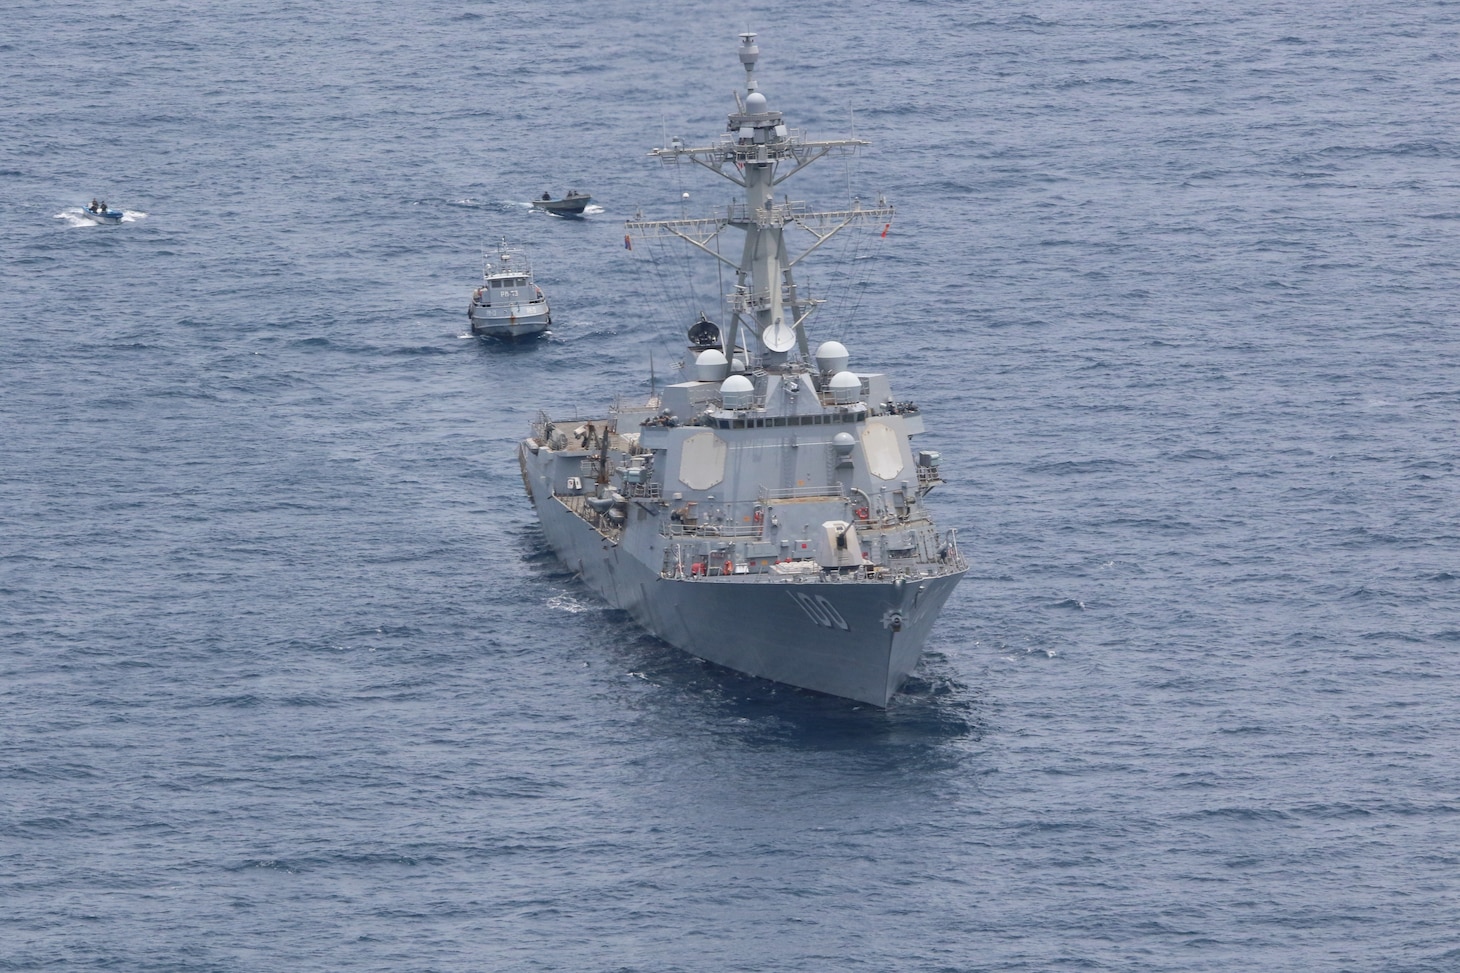 USS Kidd sails through Pacific Ocean